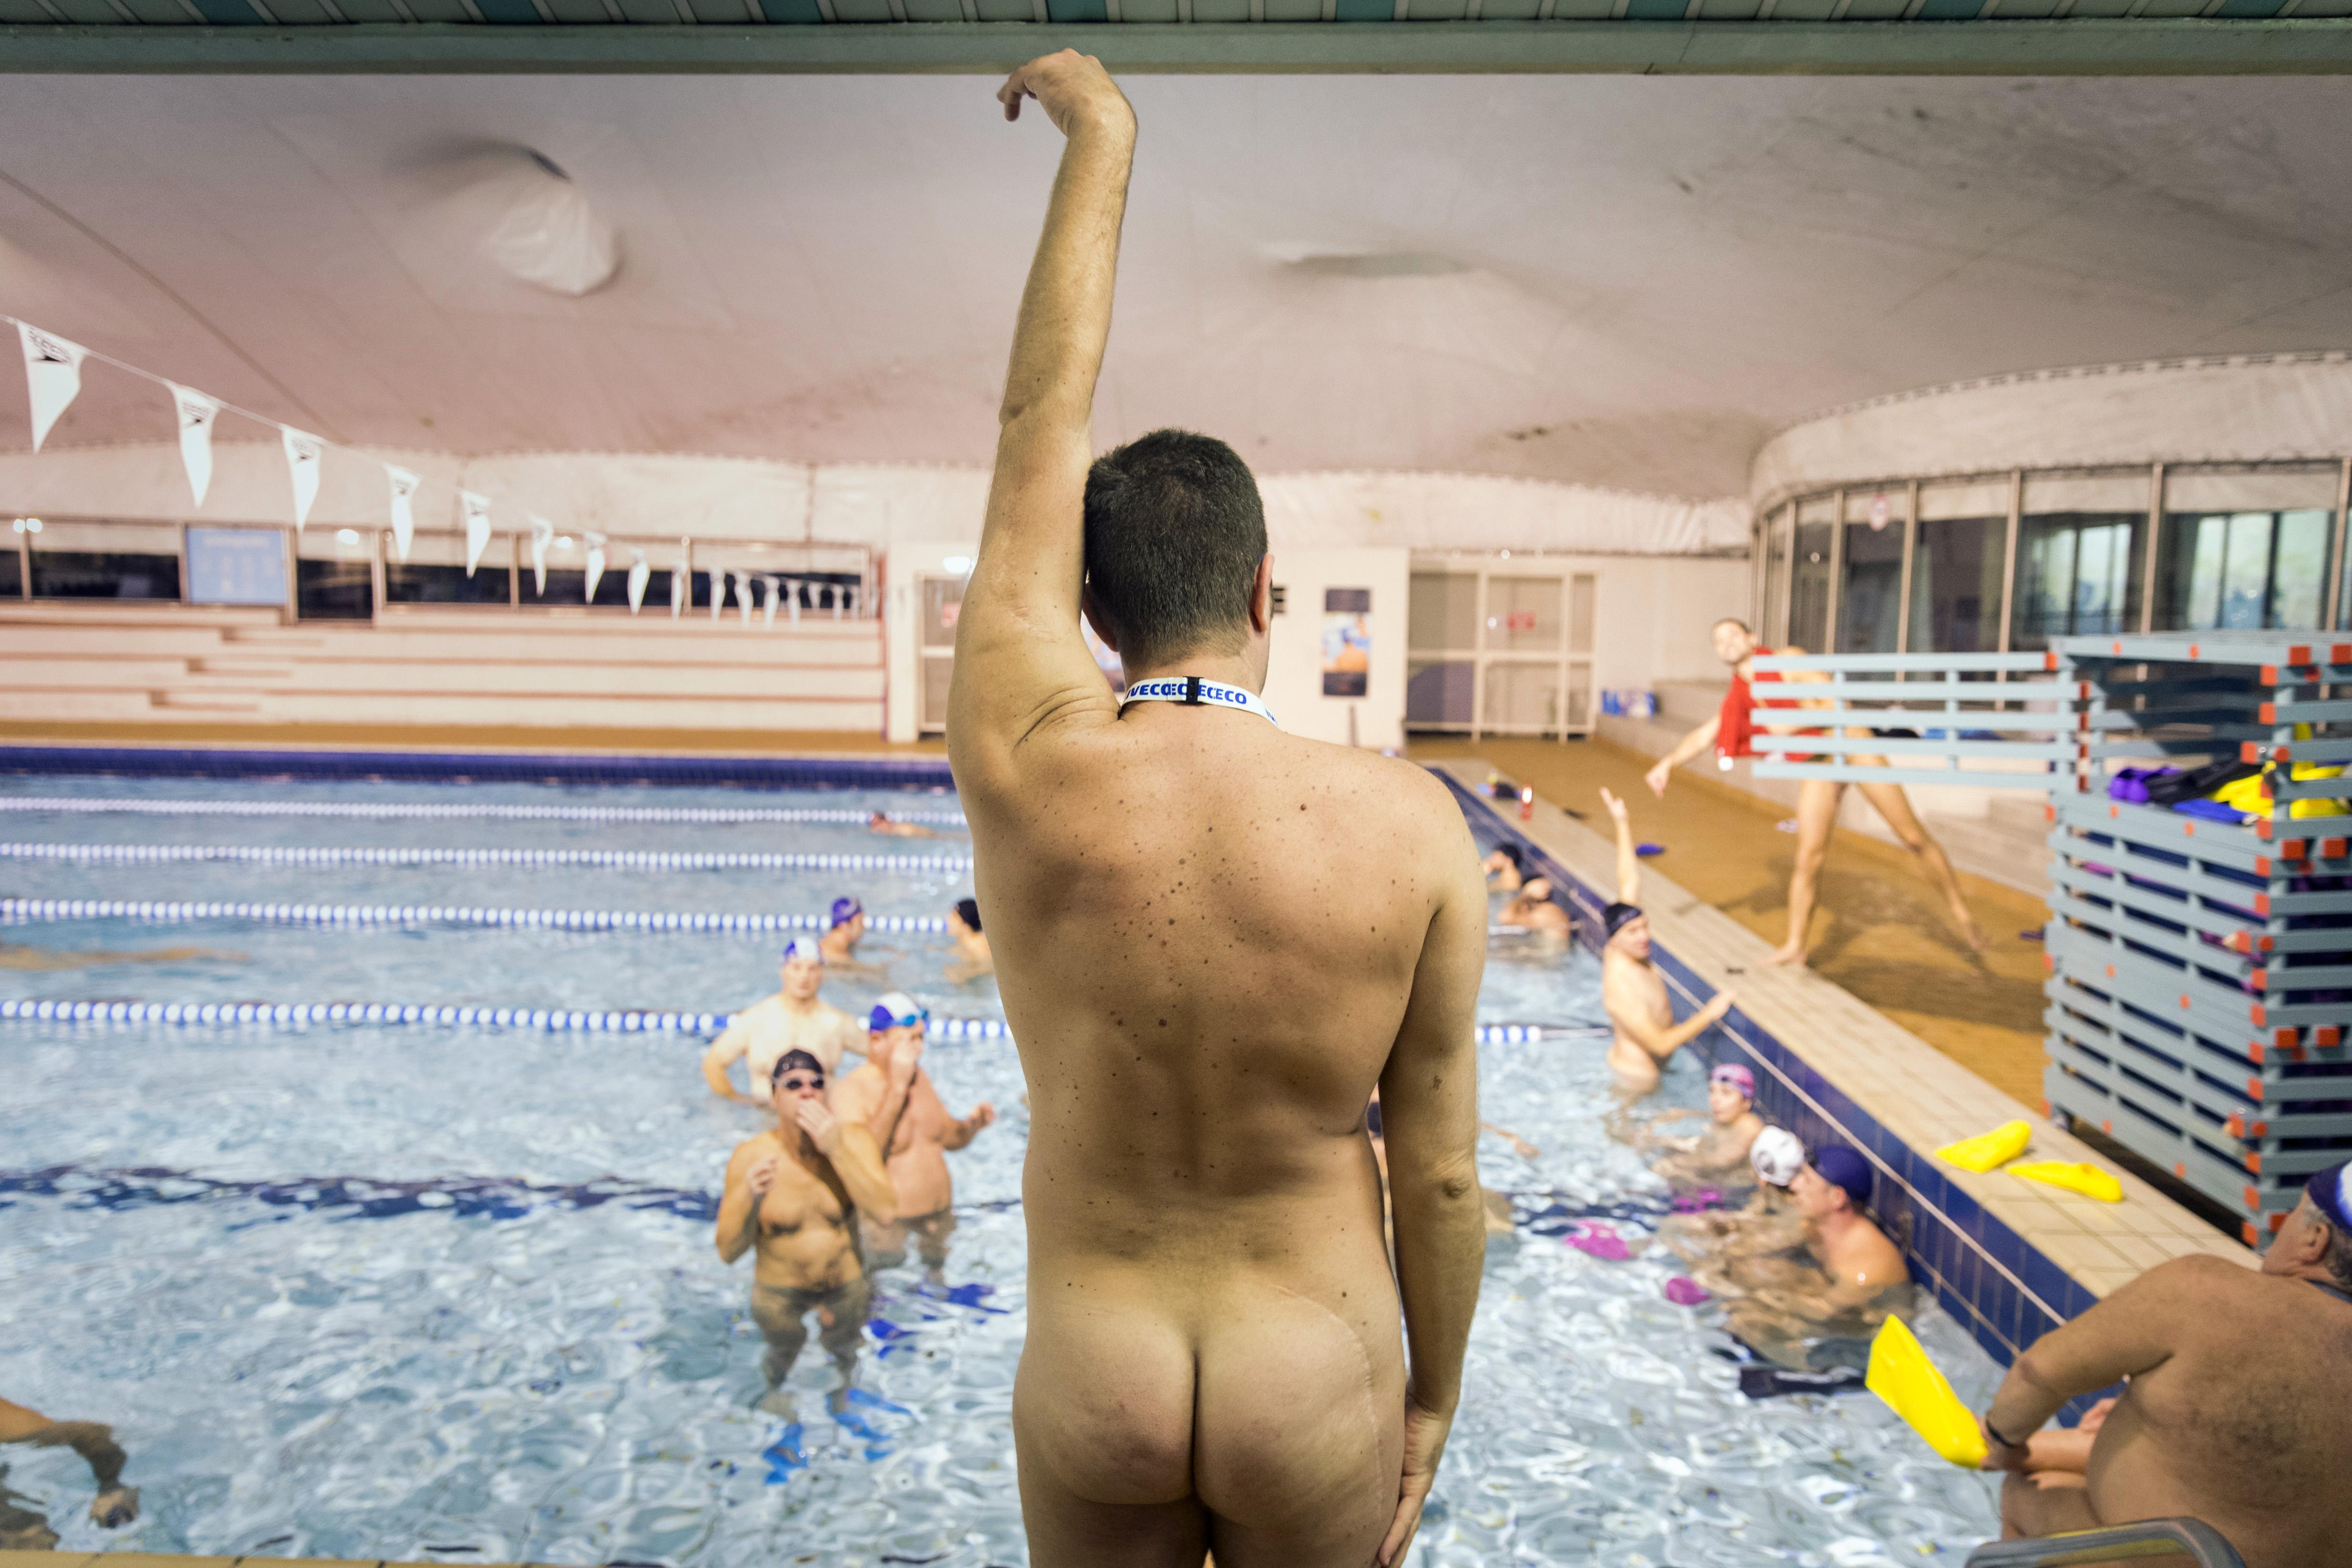 голые спортсменки пловчихи